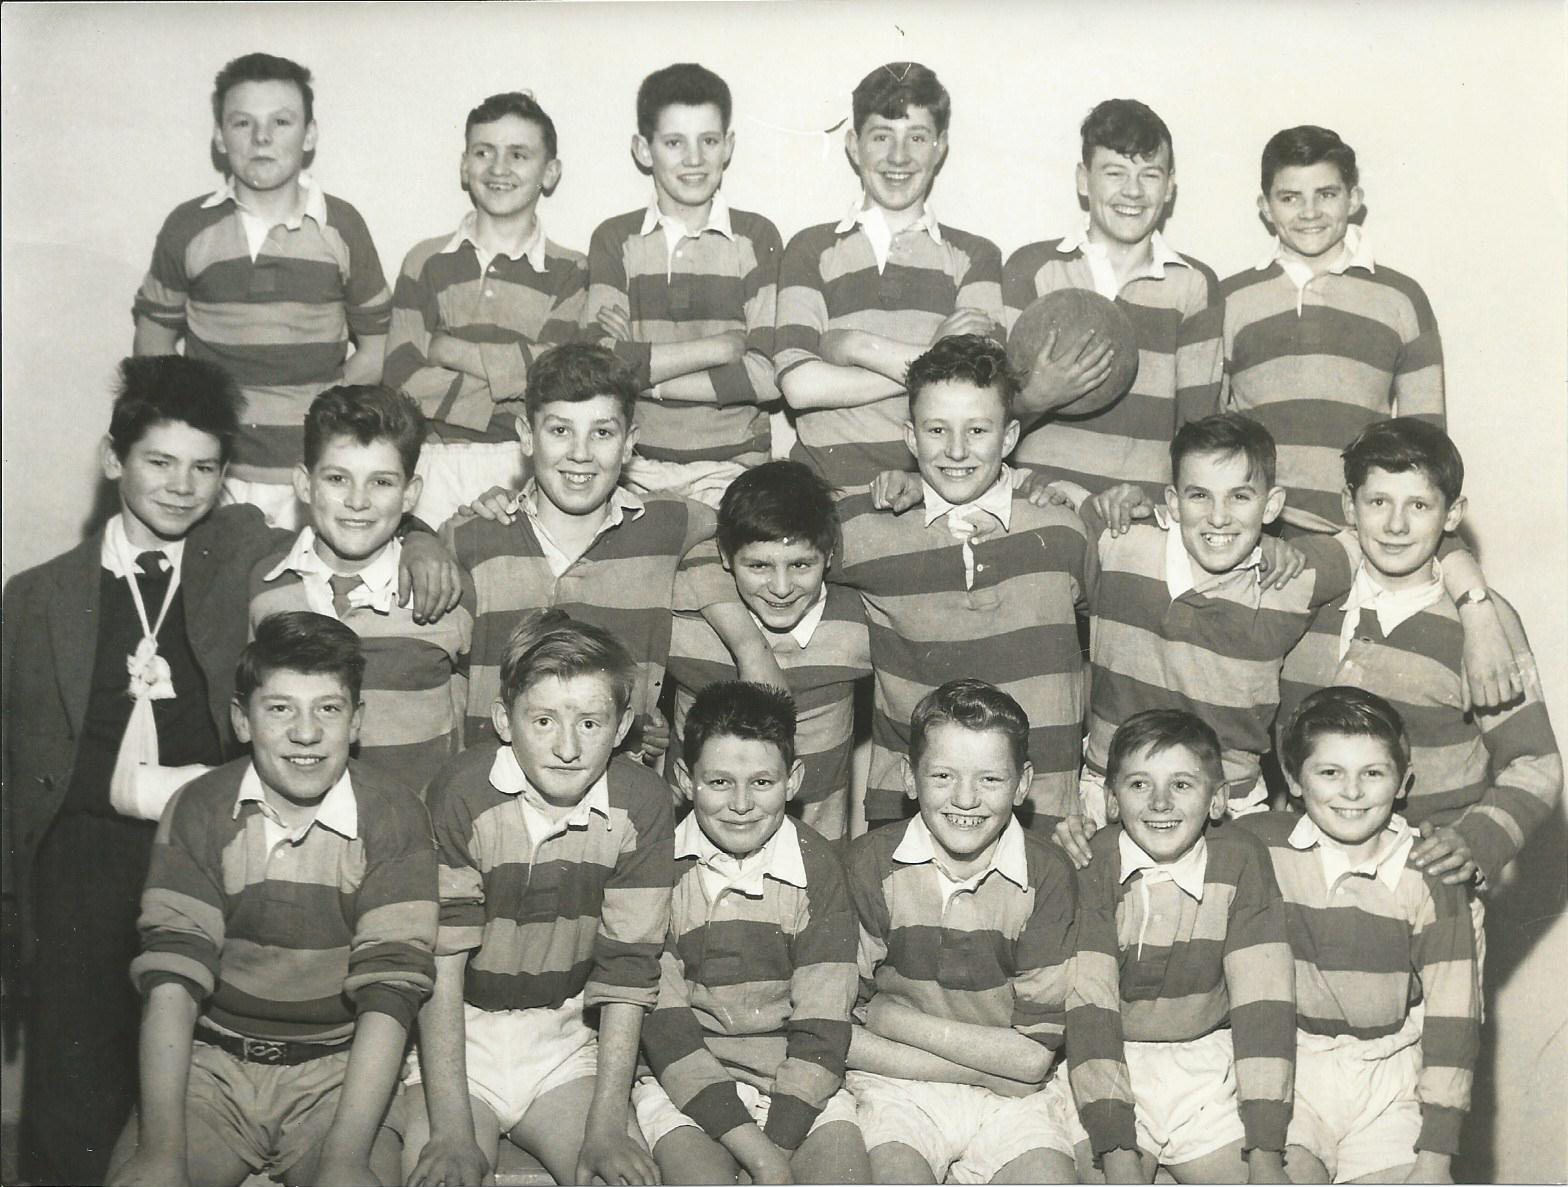 1962 under 13s team